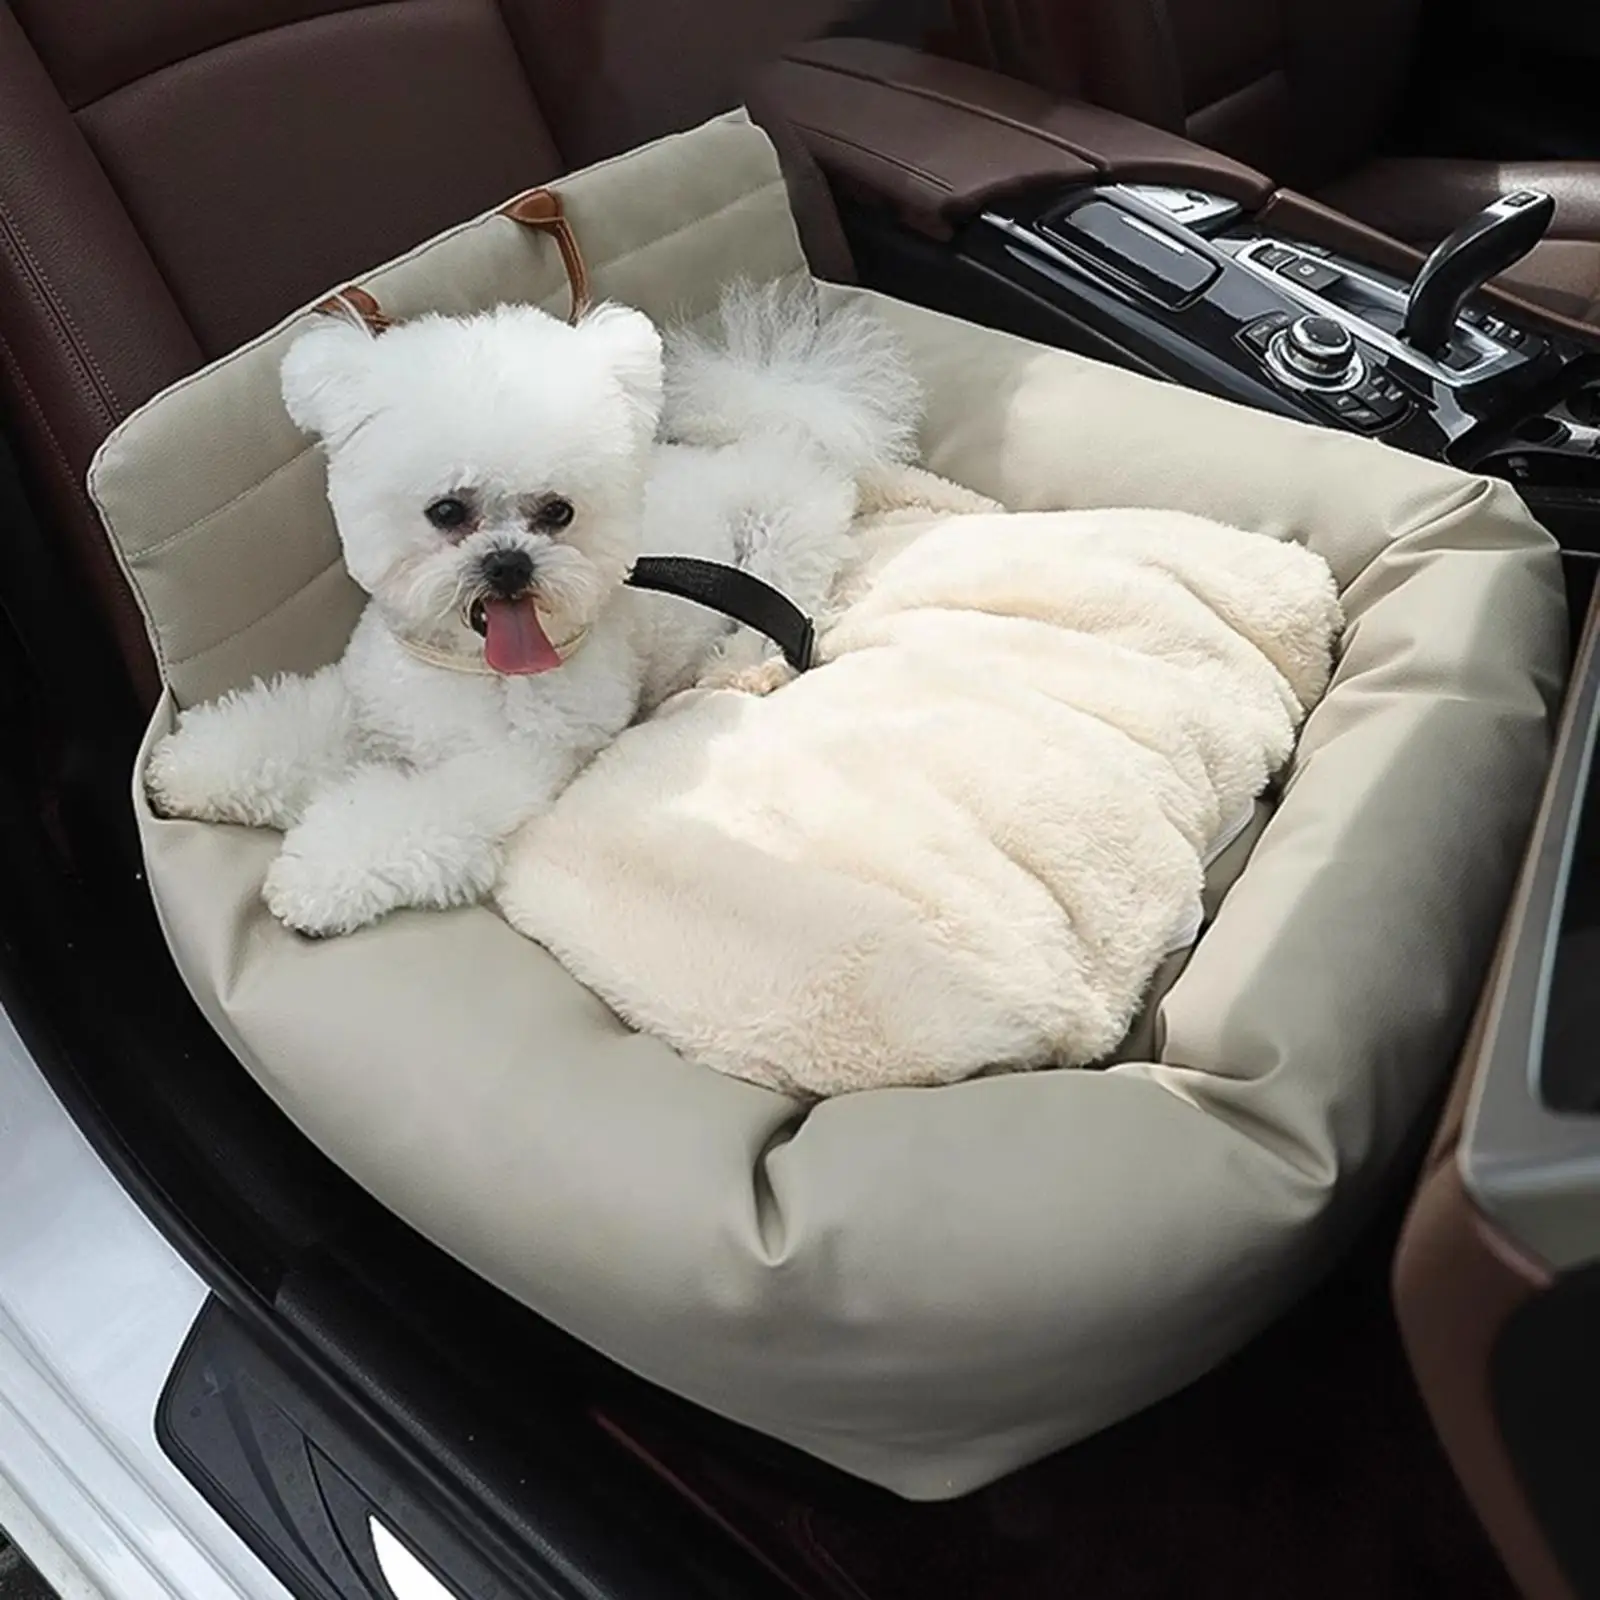 הכלב מושב מחמד שטח המושב הכלב מושב מכונית בינונית כלבים גור חתולים גדולים . ' - ' . 4